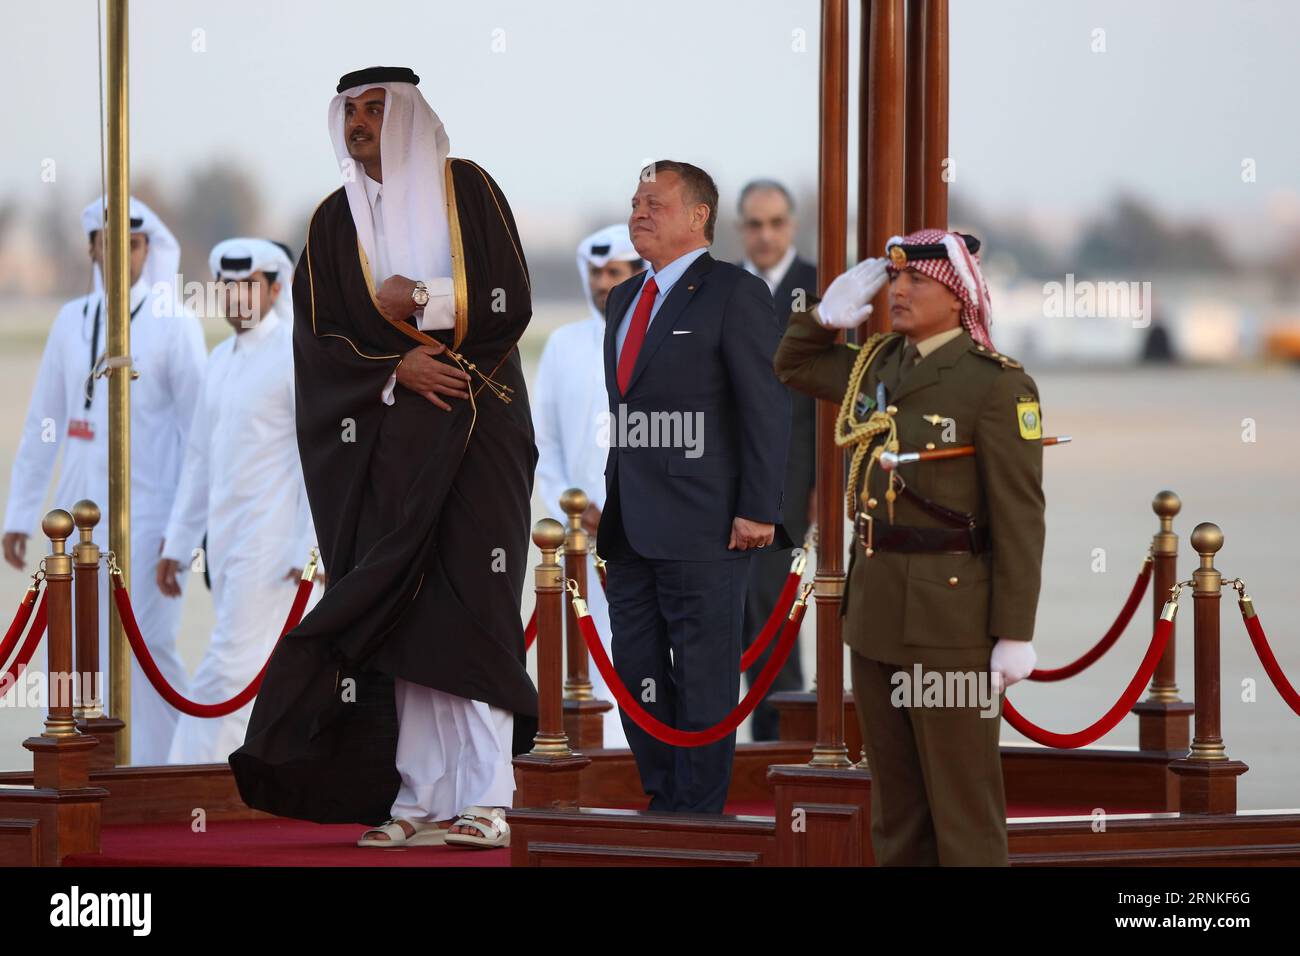 (170328) -- AMMAN, le 28 mars 2017 -- l'émir Cheikh Tamim bin Hamad al-Thani (L, front) est accueilli par le Roi Abdullah II (C) lors d'une cérémonie à l'aéroport international Reine Alia à Amman, capitale de la Jordanie, le 28 mars 2017. Le 28e Sommet de la Ligue des États arabes (LEA) se tiendra mercredi dans la région de la mer Morte en Jordanie. ) JORDANIE-AMMAN-LIGUE ARABE-SOMMET-QATAR-EMIR MohammadxAbuxGhosh PUBLICATIONxNOTxINxCHN Amman Mars 28 2017 Qatar S Emir Sheikh Tamim am Hamad Al Thani l Front EST ACCUEILLI par Jordanie S Roi Abdullah II C lors d'une cérémonie de réception À TH Banque D'Images